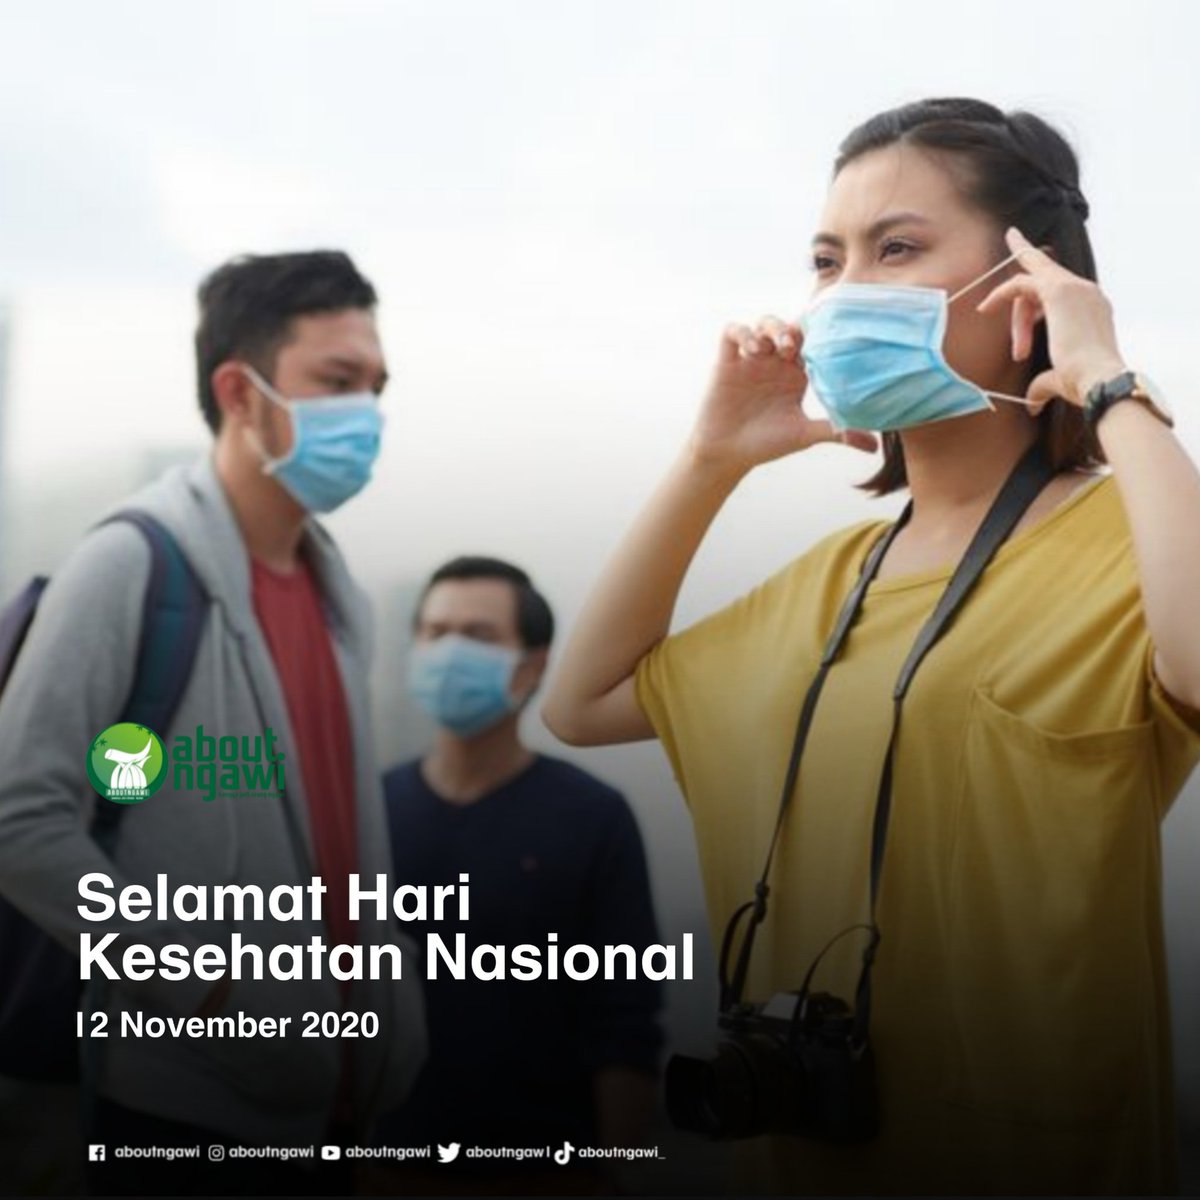 Selamat Hari Kesehatan Nasional

Satukan tekad menuju Indonesia sehat
.
.
#aboutngawi
#harikesehatannasional